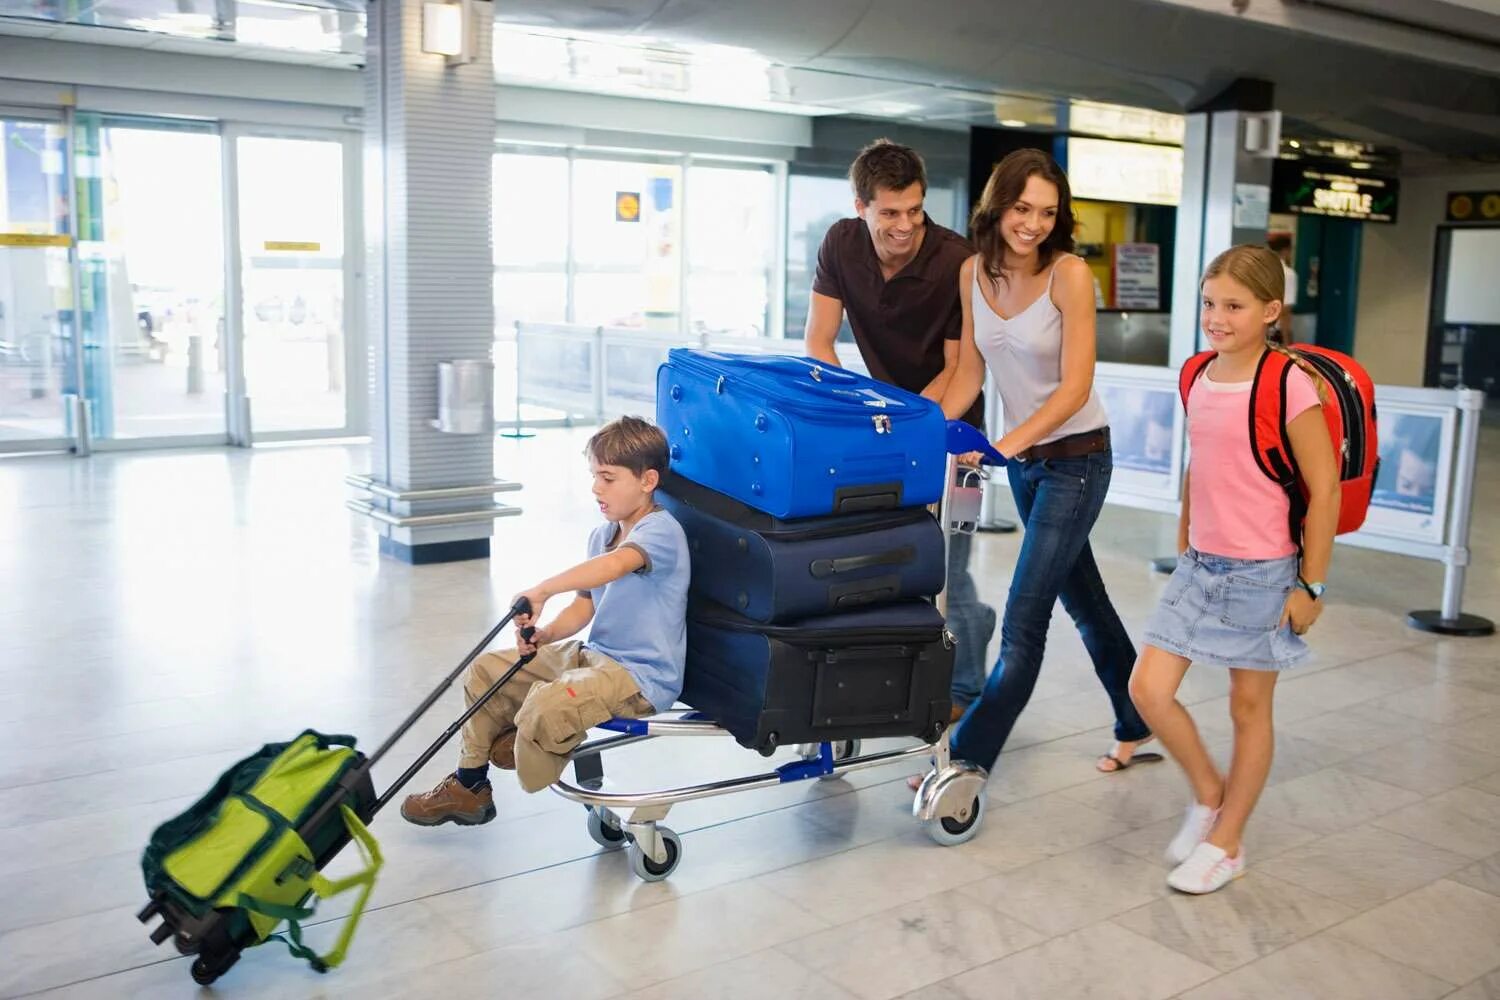 Переехать жить за границу. Чемодан в аэропорту. Семья с чемоданами в аэропорту. Тележка с чемоданами в аэропорту. Человек с чемоданом и ребенок.